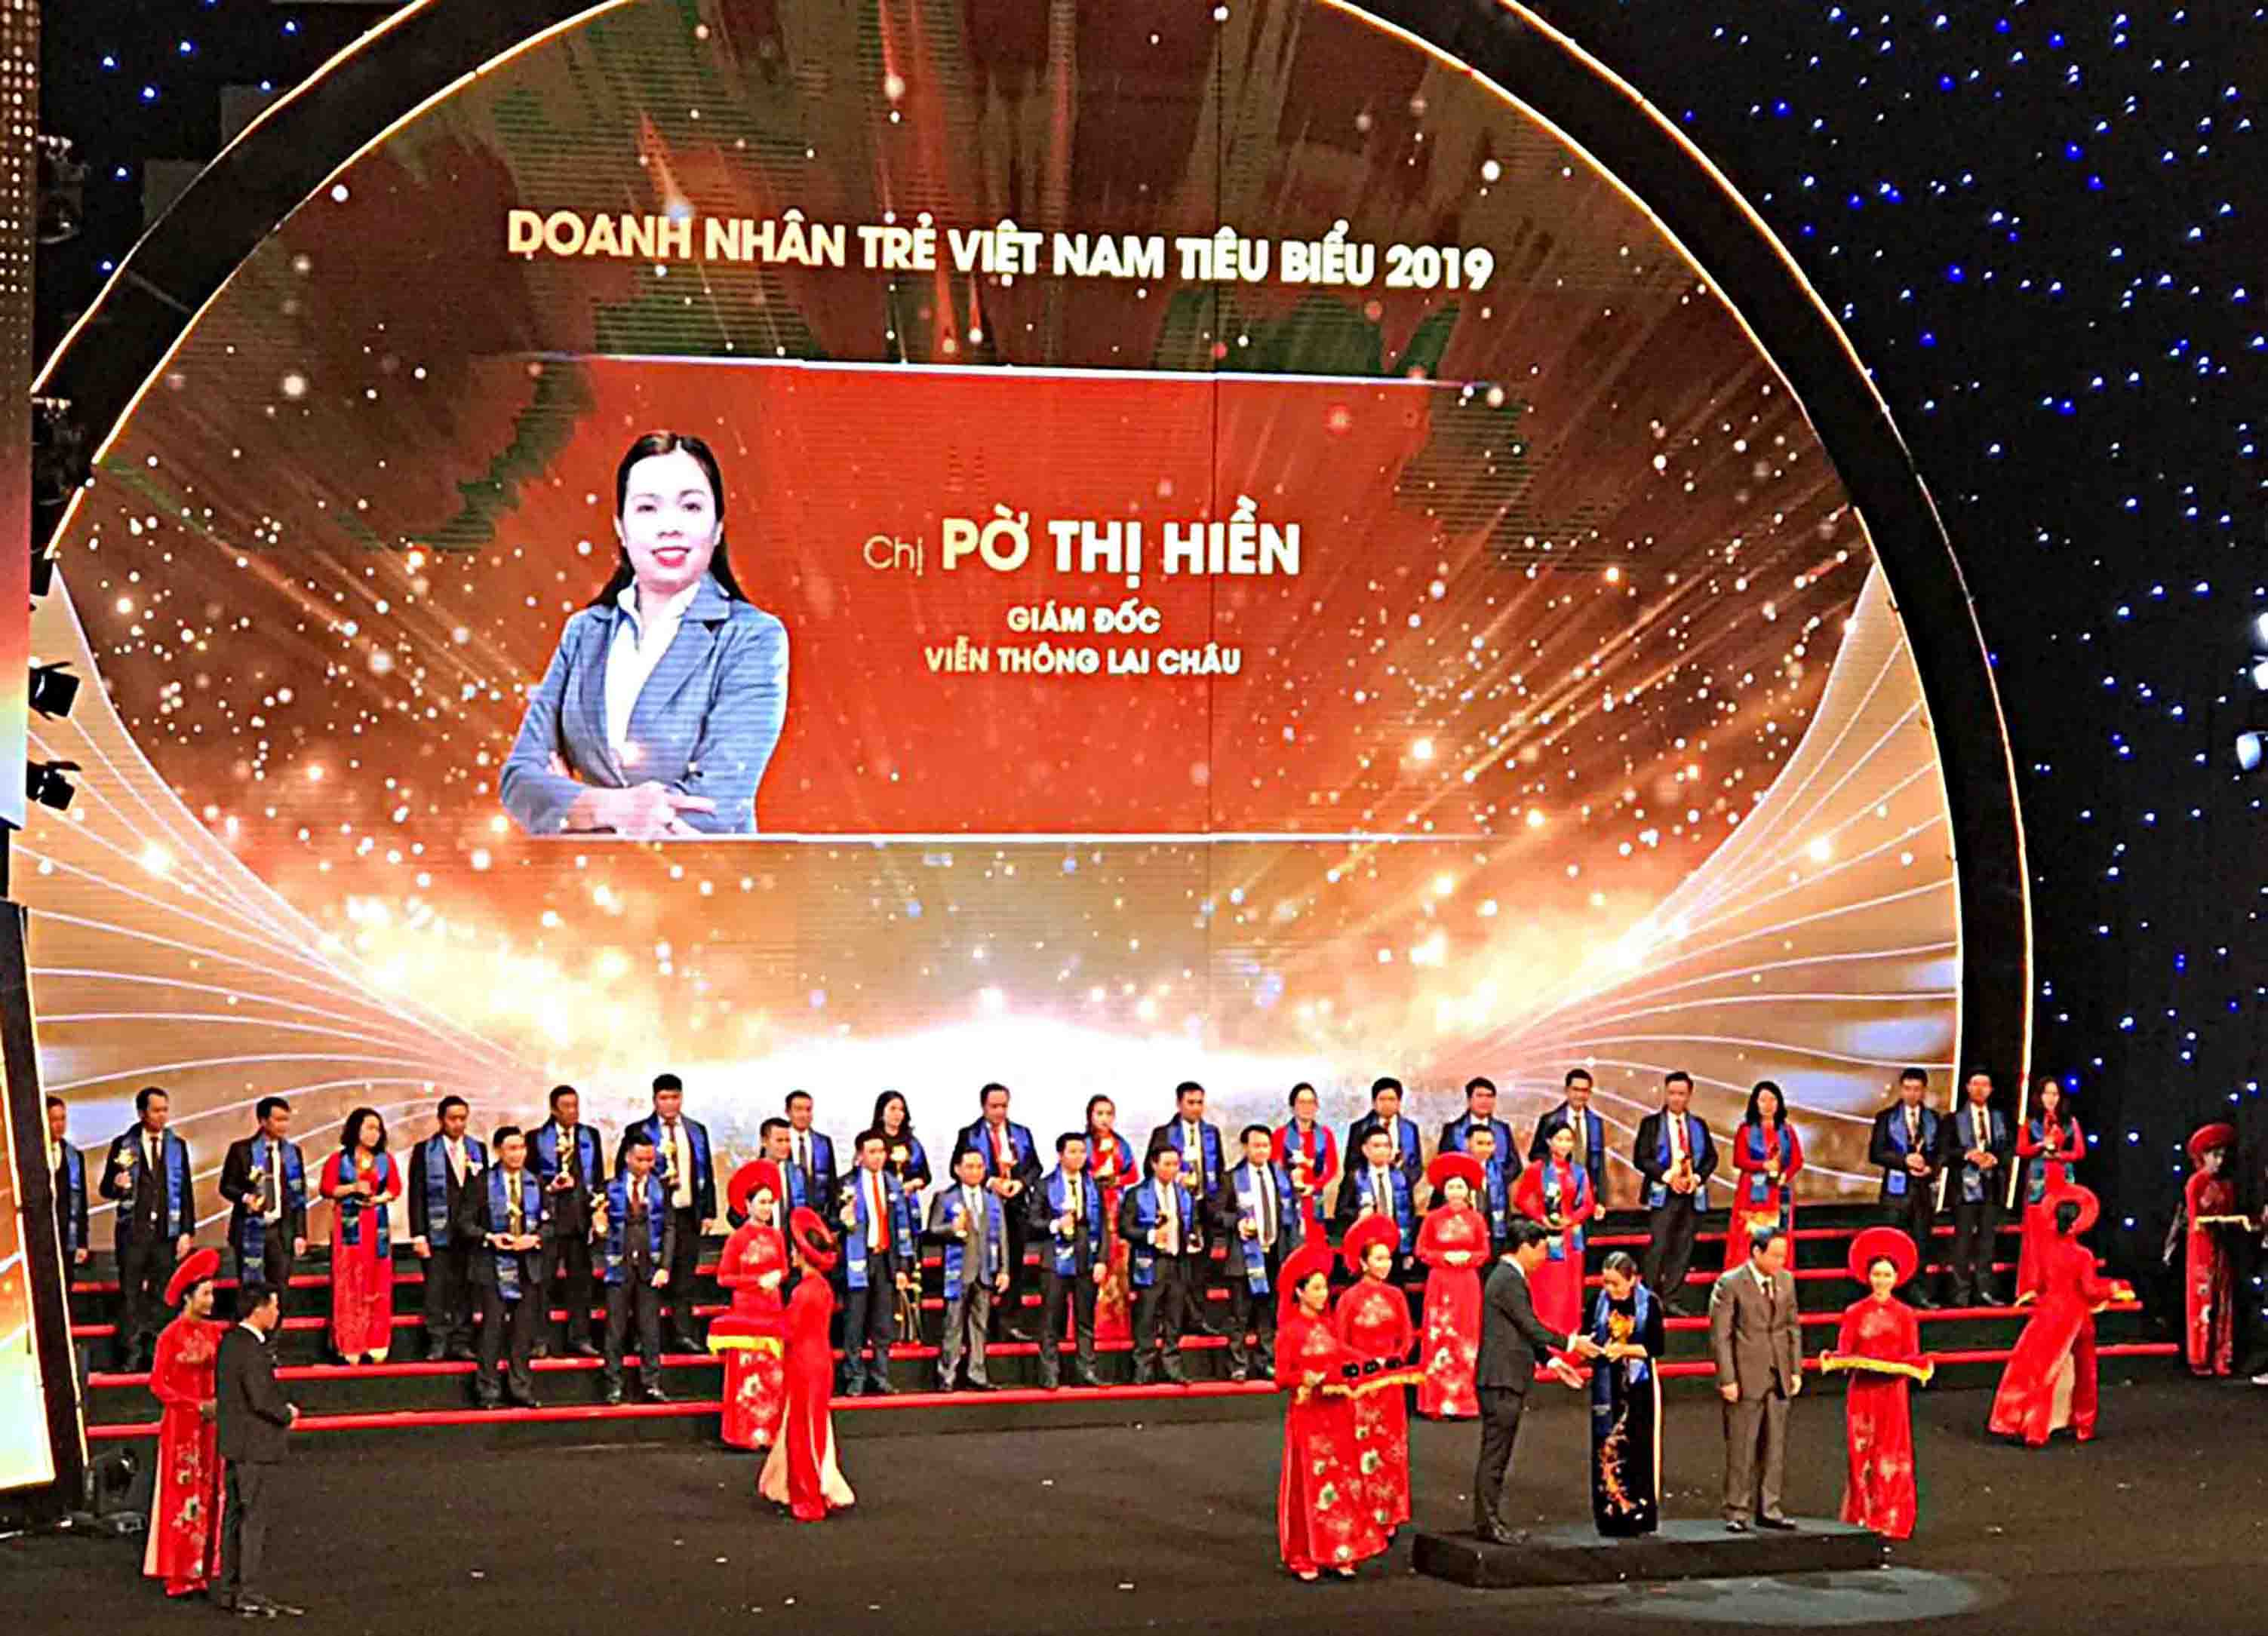 Chị Pờ Thị Hiền - Bí Thư Đảng ủy, Giám đốc Viễn thông Lai Châu nhận giải thưởng Sao Đỏ năm 2019.